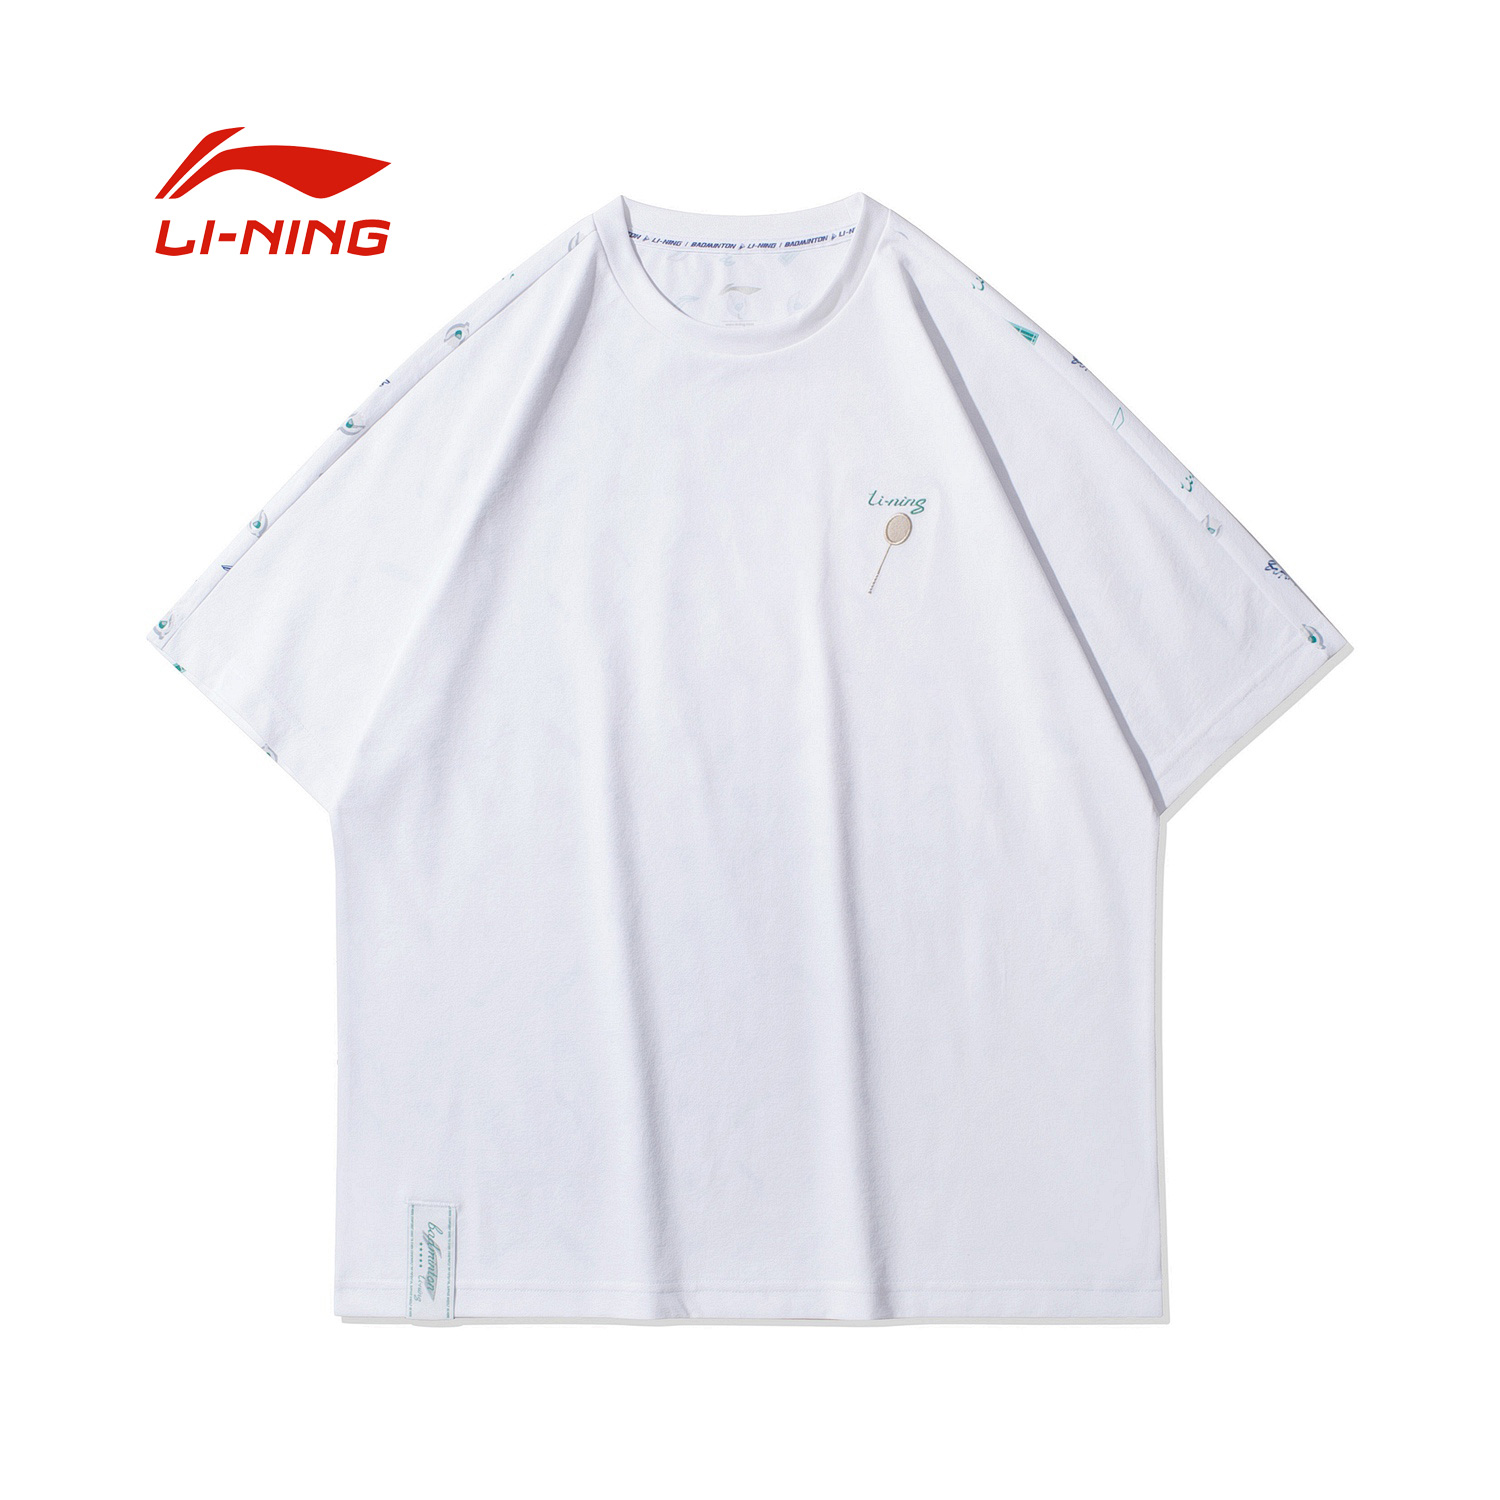 李宁羽毛球系列男子吸汗舒适宽松短袖文化衫2021年夏新款AHSR061-1-3